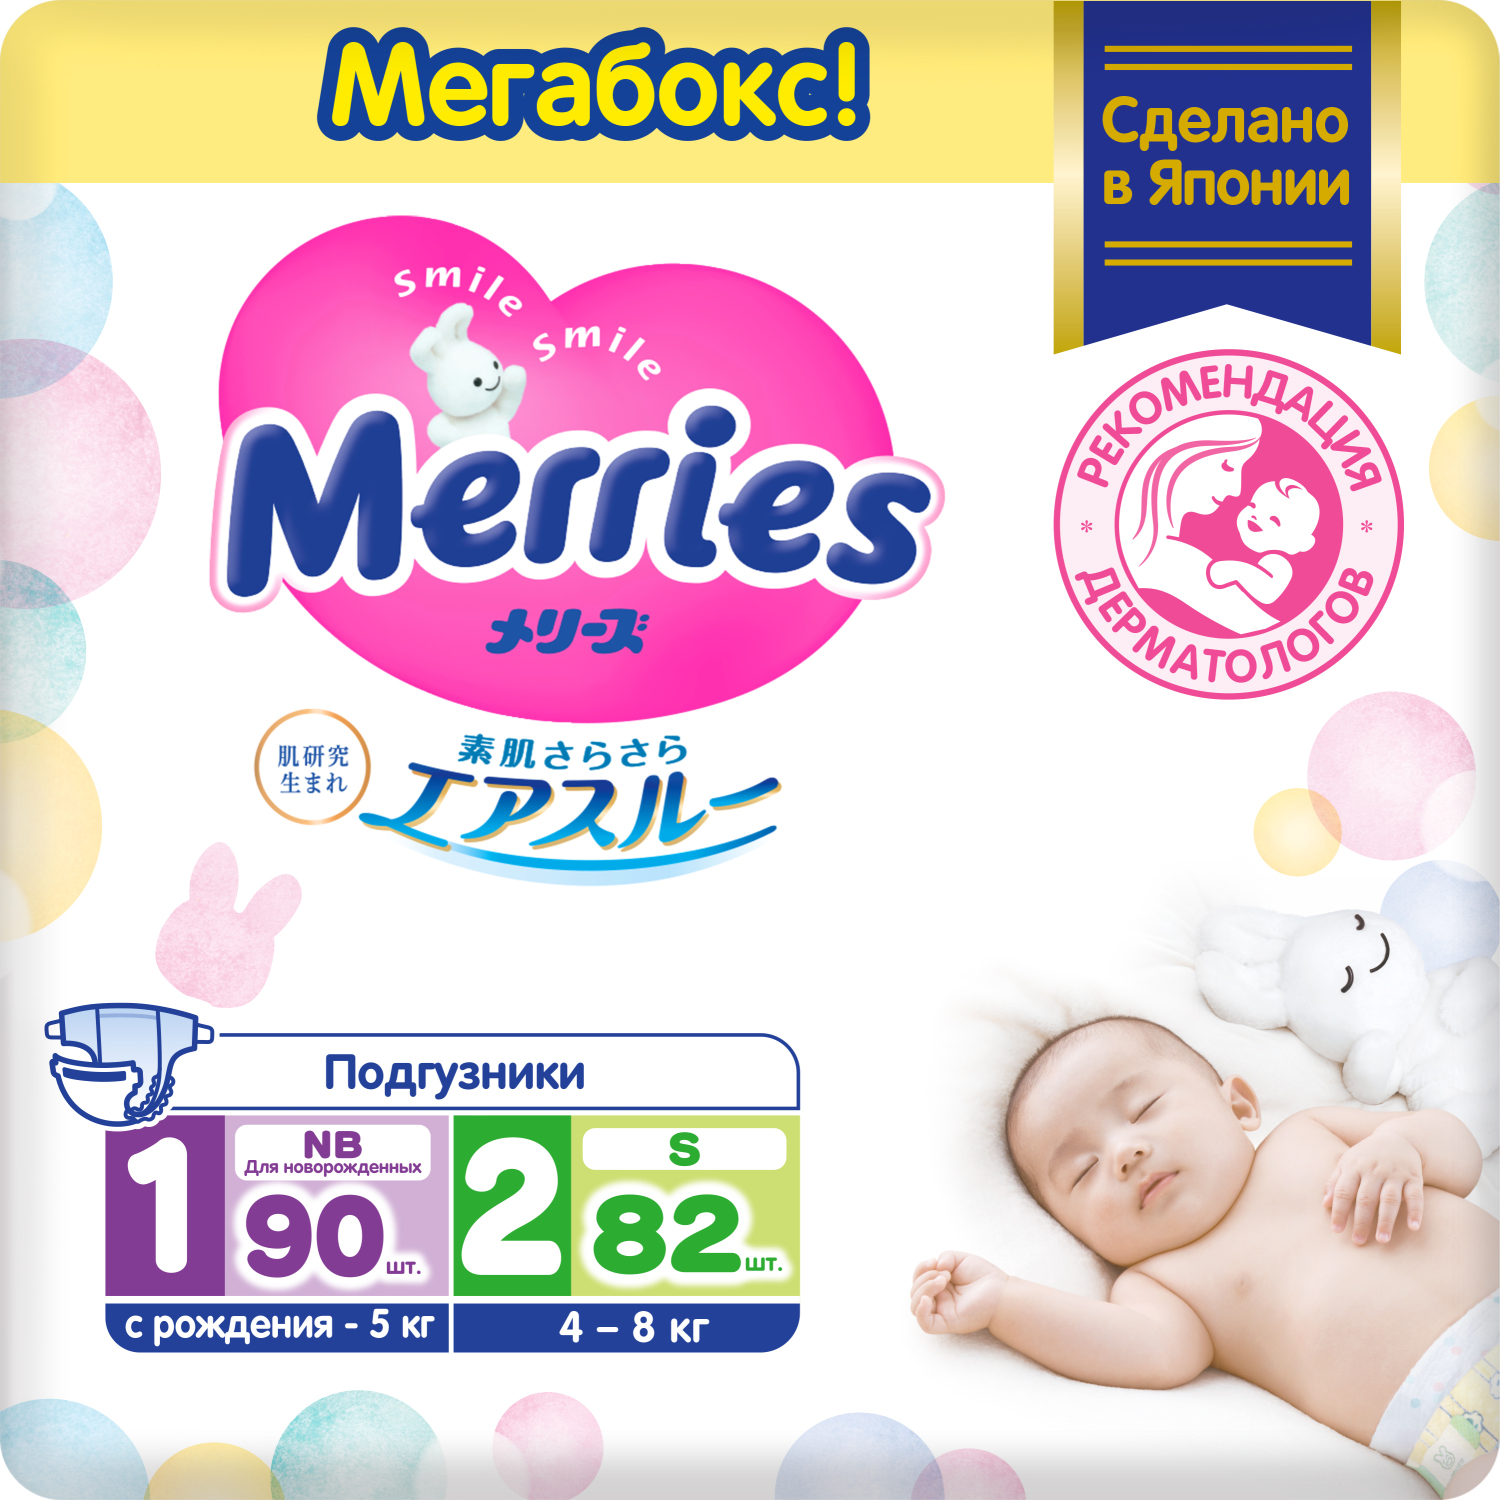 Набор подгузников для новорожденных Merries NB (до 5 кг), 90 шт. + S (4-8 кг) 82 шт. подгузники merries 40th anniversary для новорожденных nb до 5 кг 90 шт